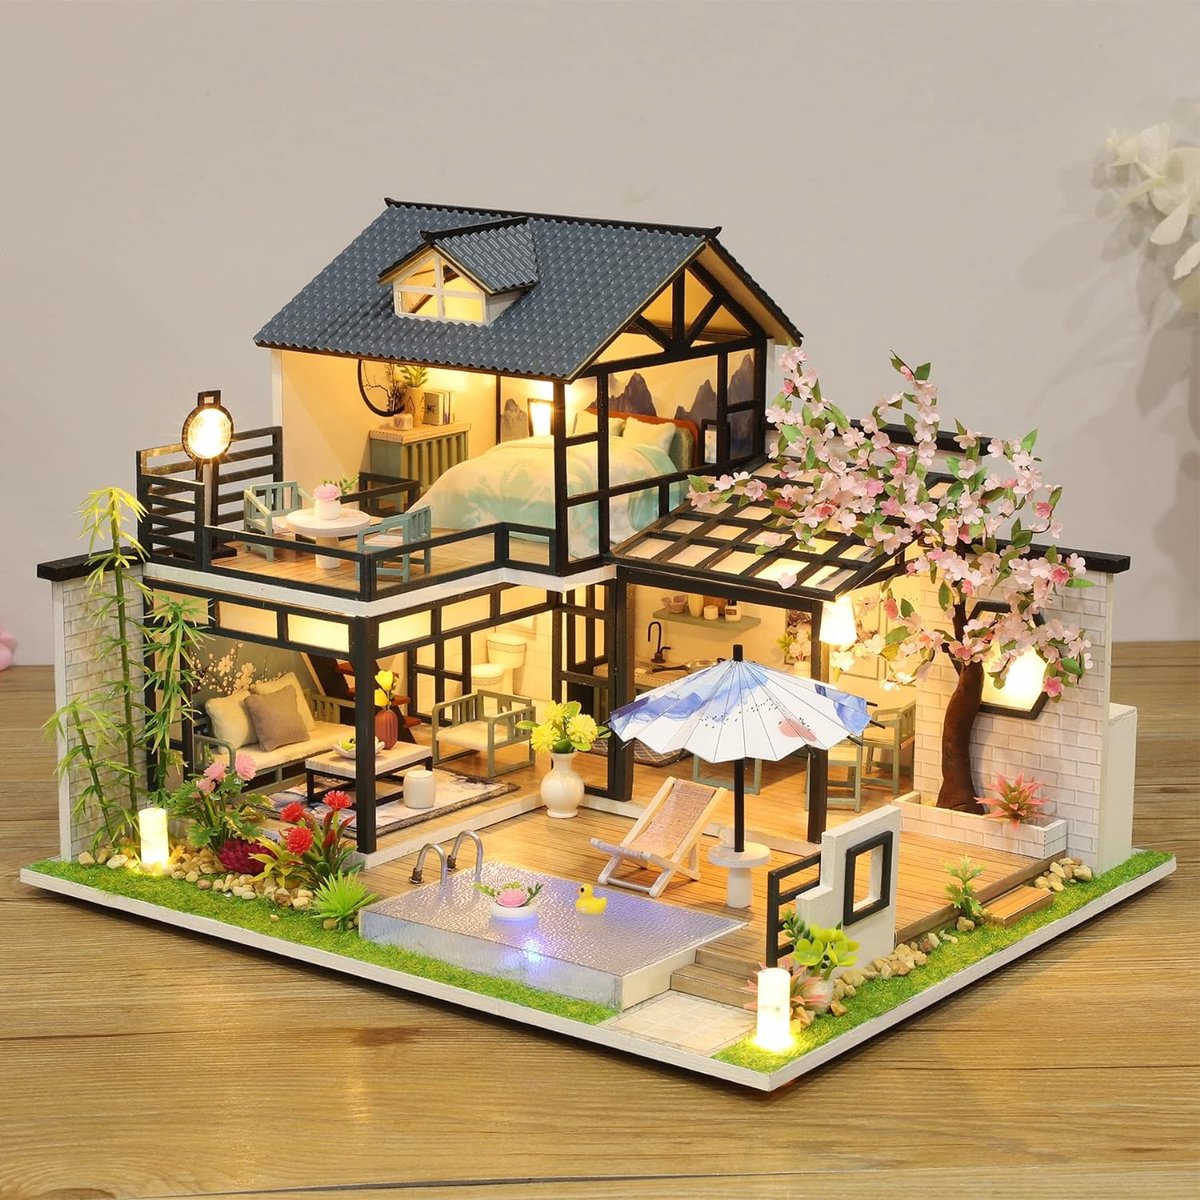 Miniatuur Poppenhuis Kit om DIY Poppenhuis Kit met Meubilair te bouwen Muziek DIY Miniatuur Huis Kit met Gereedschap Maak je eigen Craft House Model (Poëtische binnenplaats)